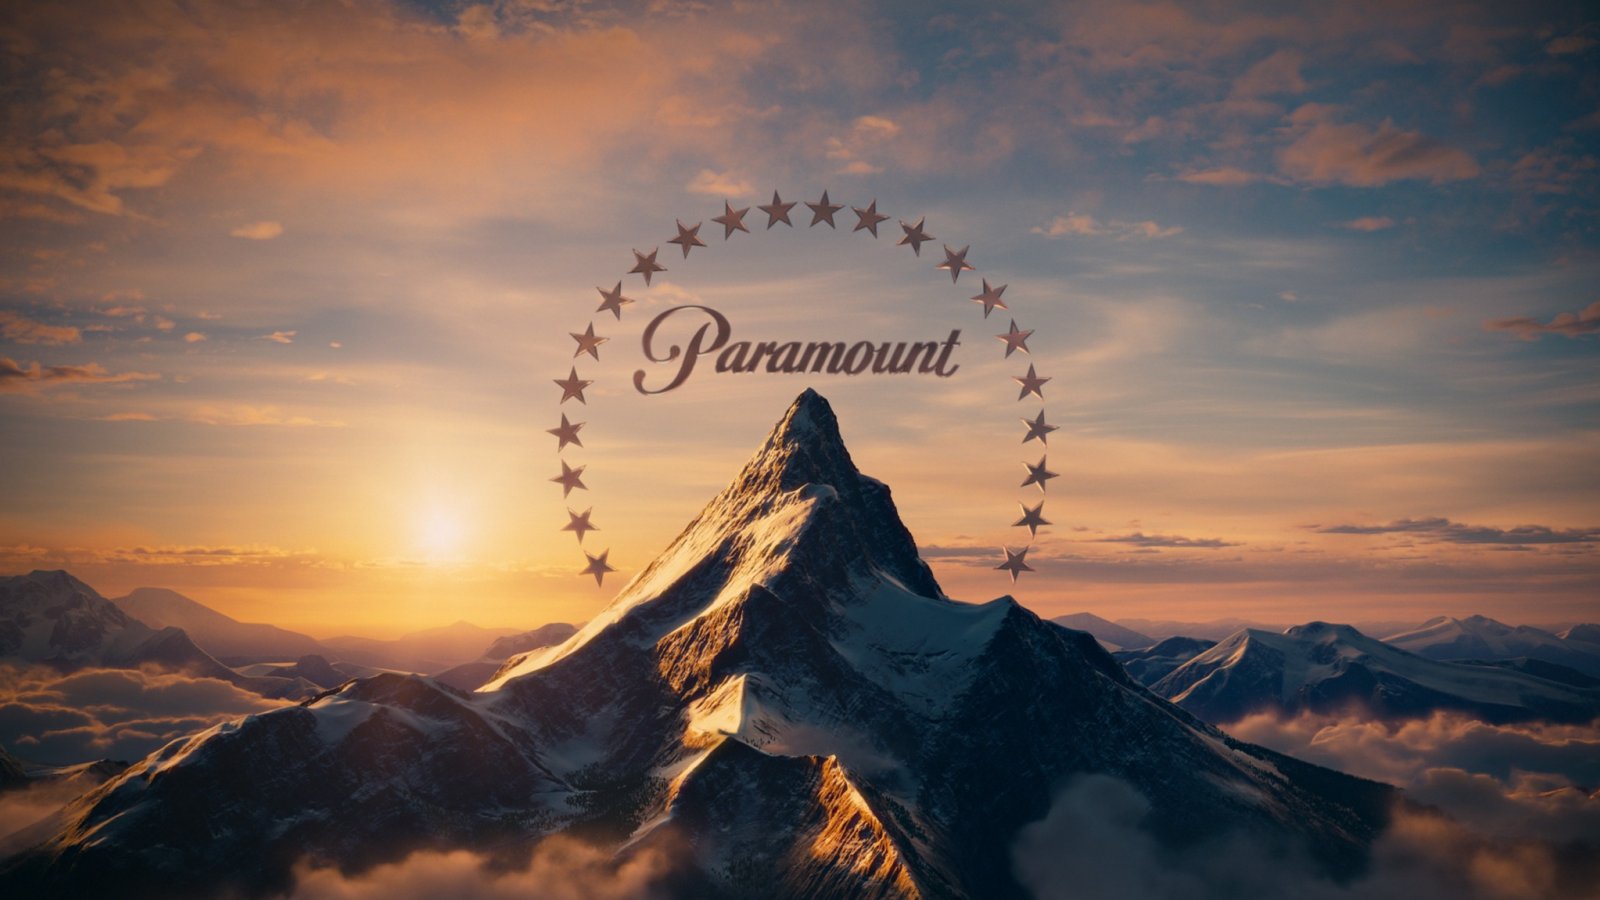 Sony e Apollo hanno offerto 26 miliardi di dollari per acquisire Paramount